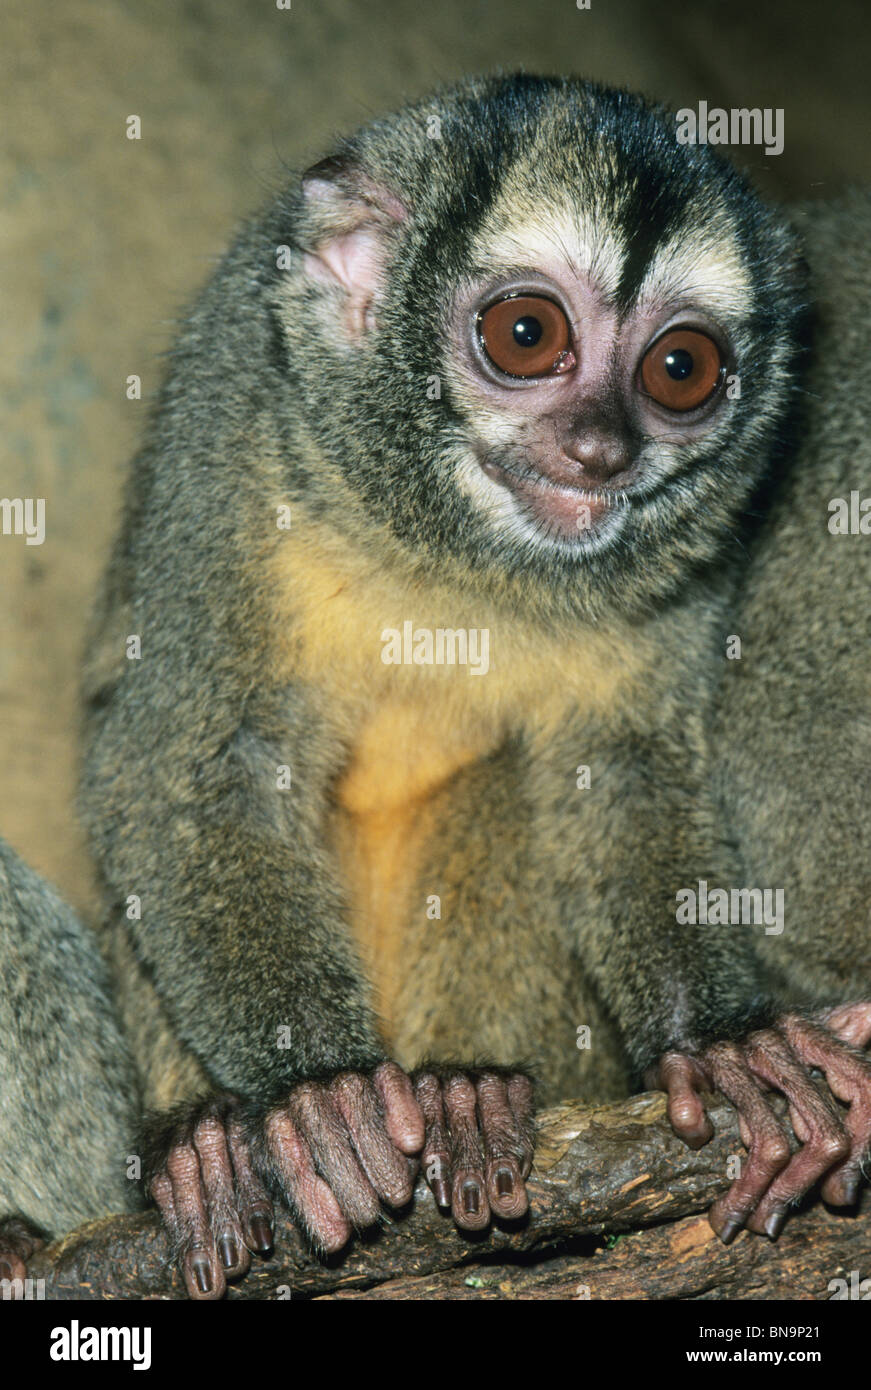 Nuit, singe Aotus (espèces), le singe de nuit est également connu comme le singe hibou et sont des animaux nocturnes, en captivité. Banque D'Images